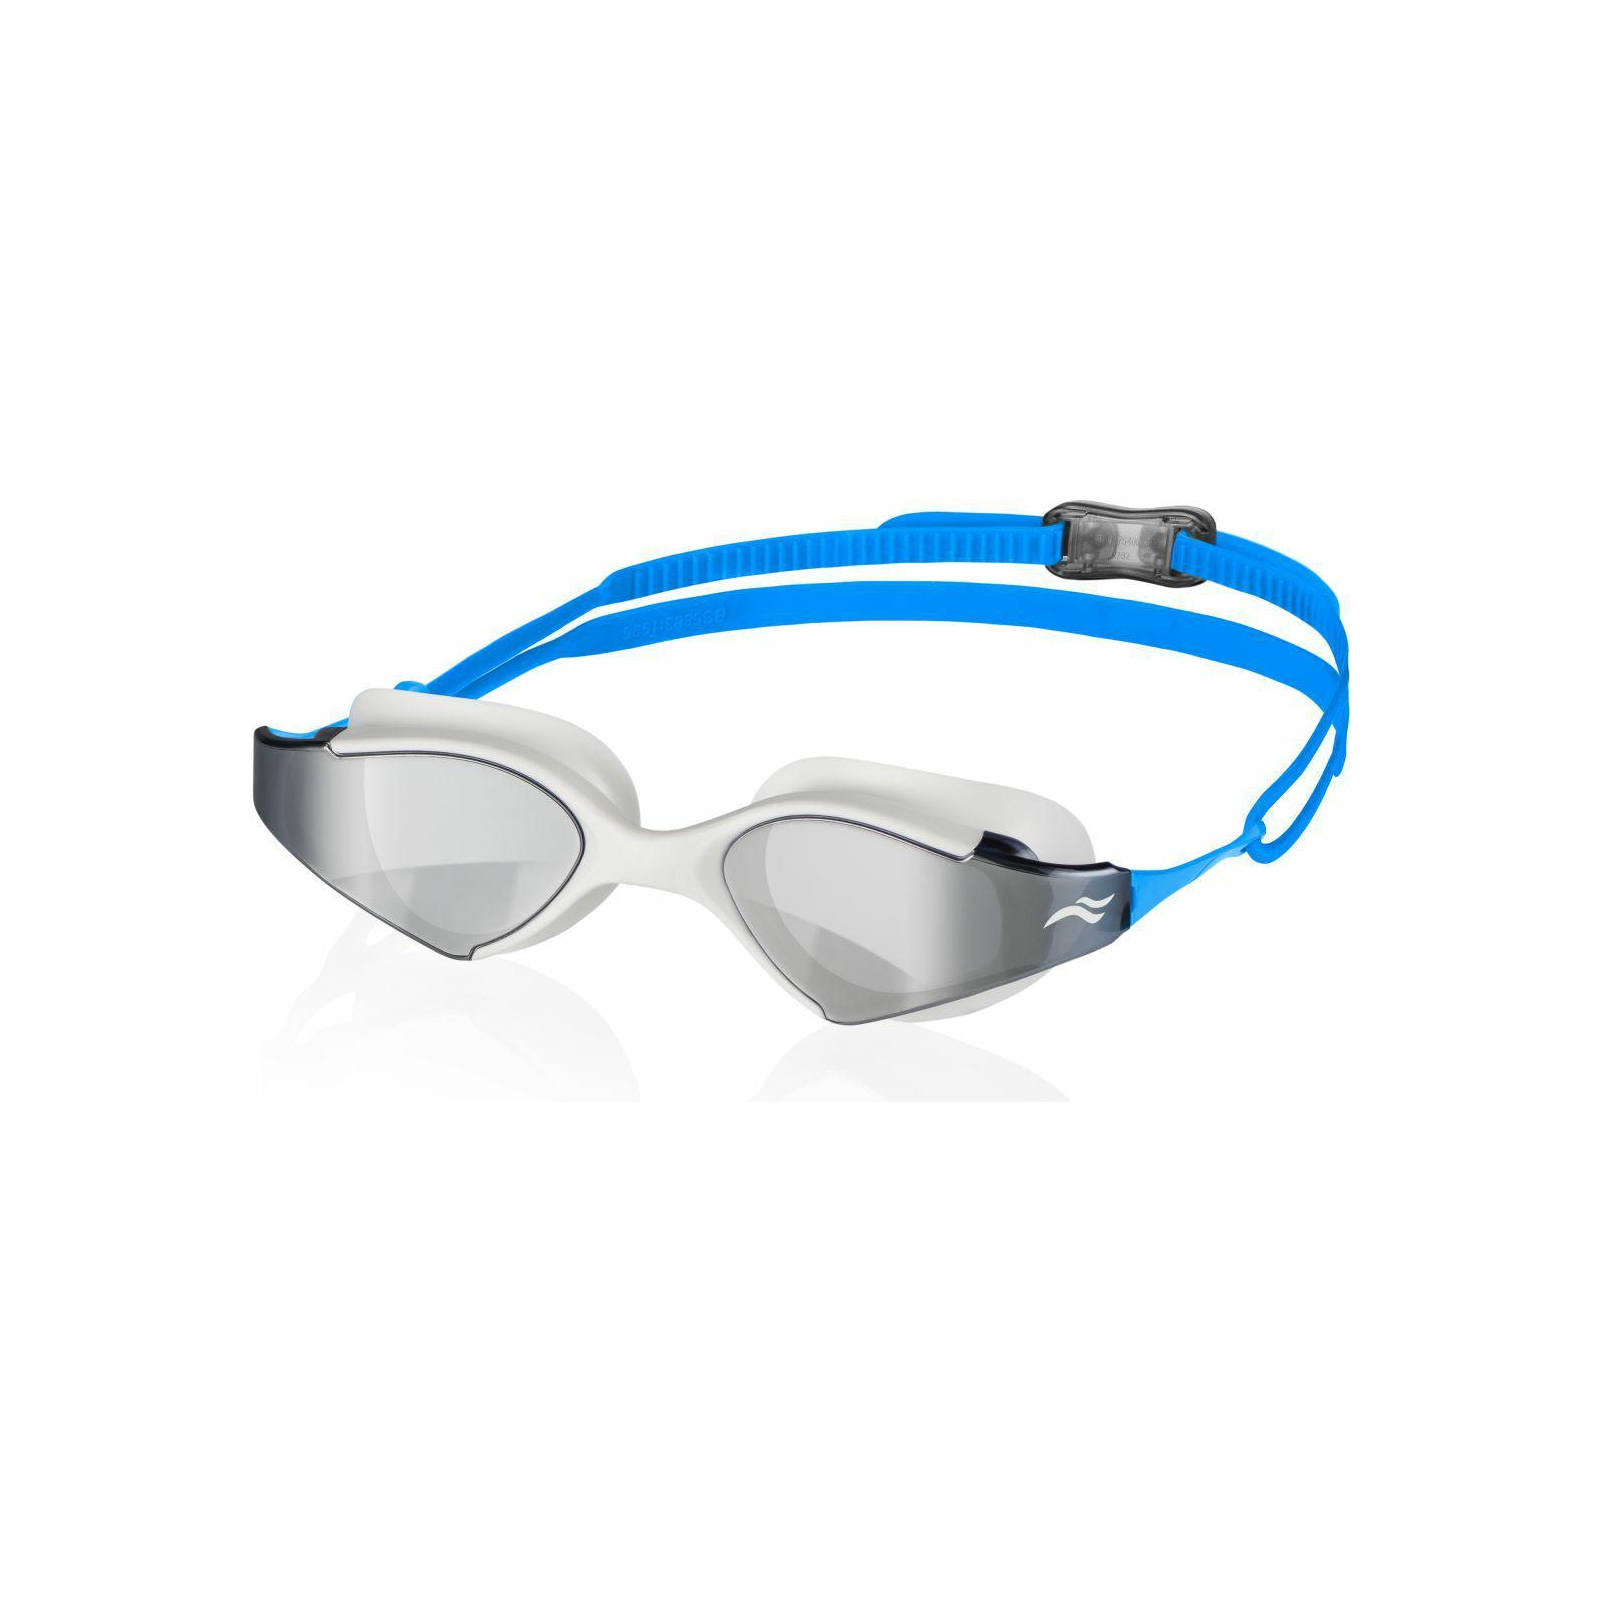 Окуляри для плавання Aqua Speed Blade Mirror 060-51 6139 білий, блакитний OSFM (5908217661395)